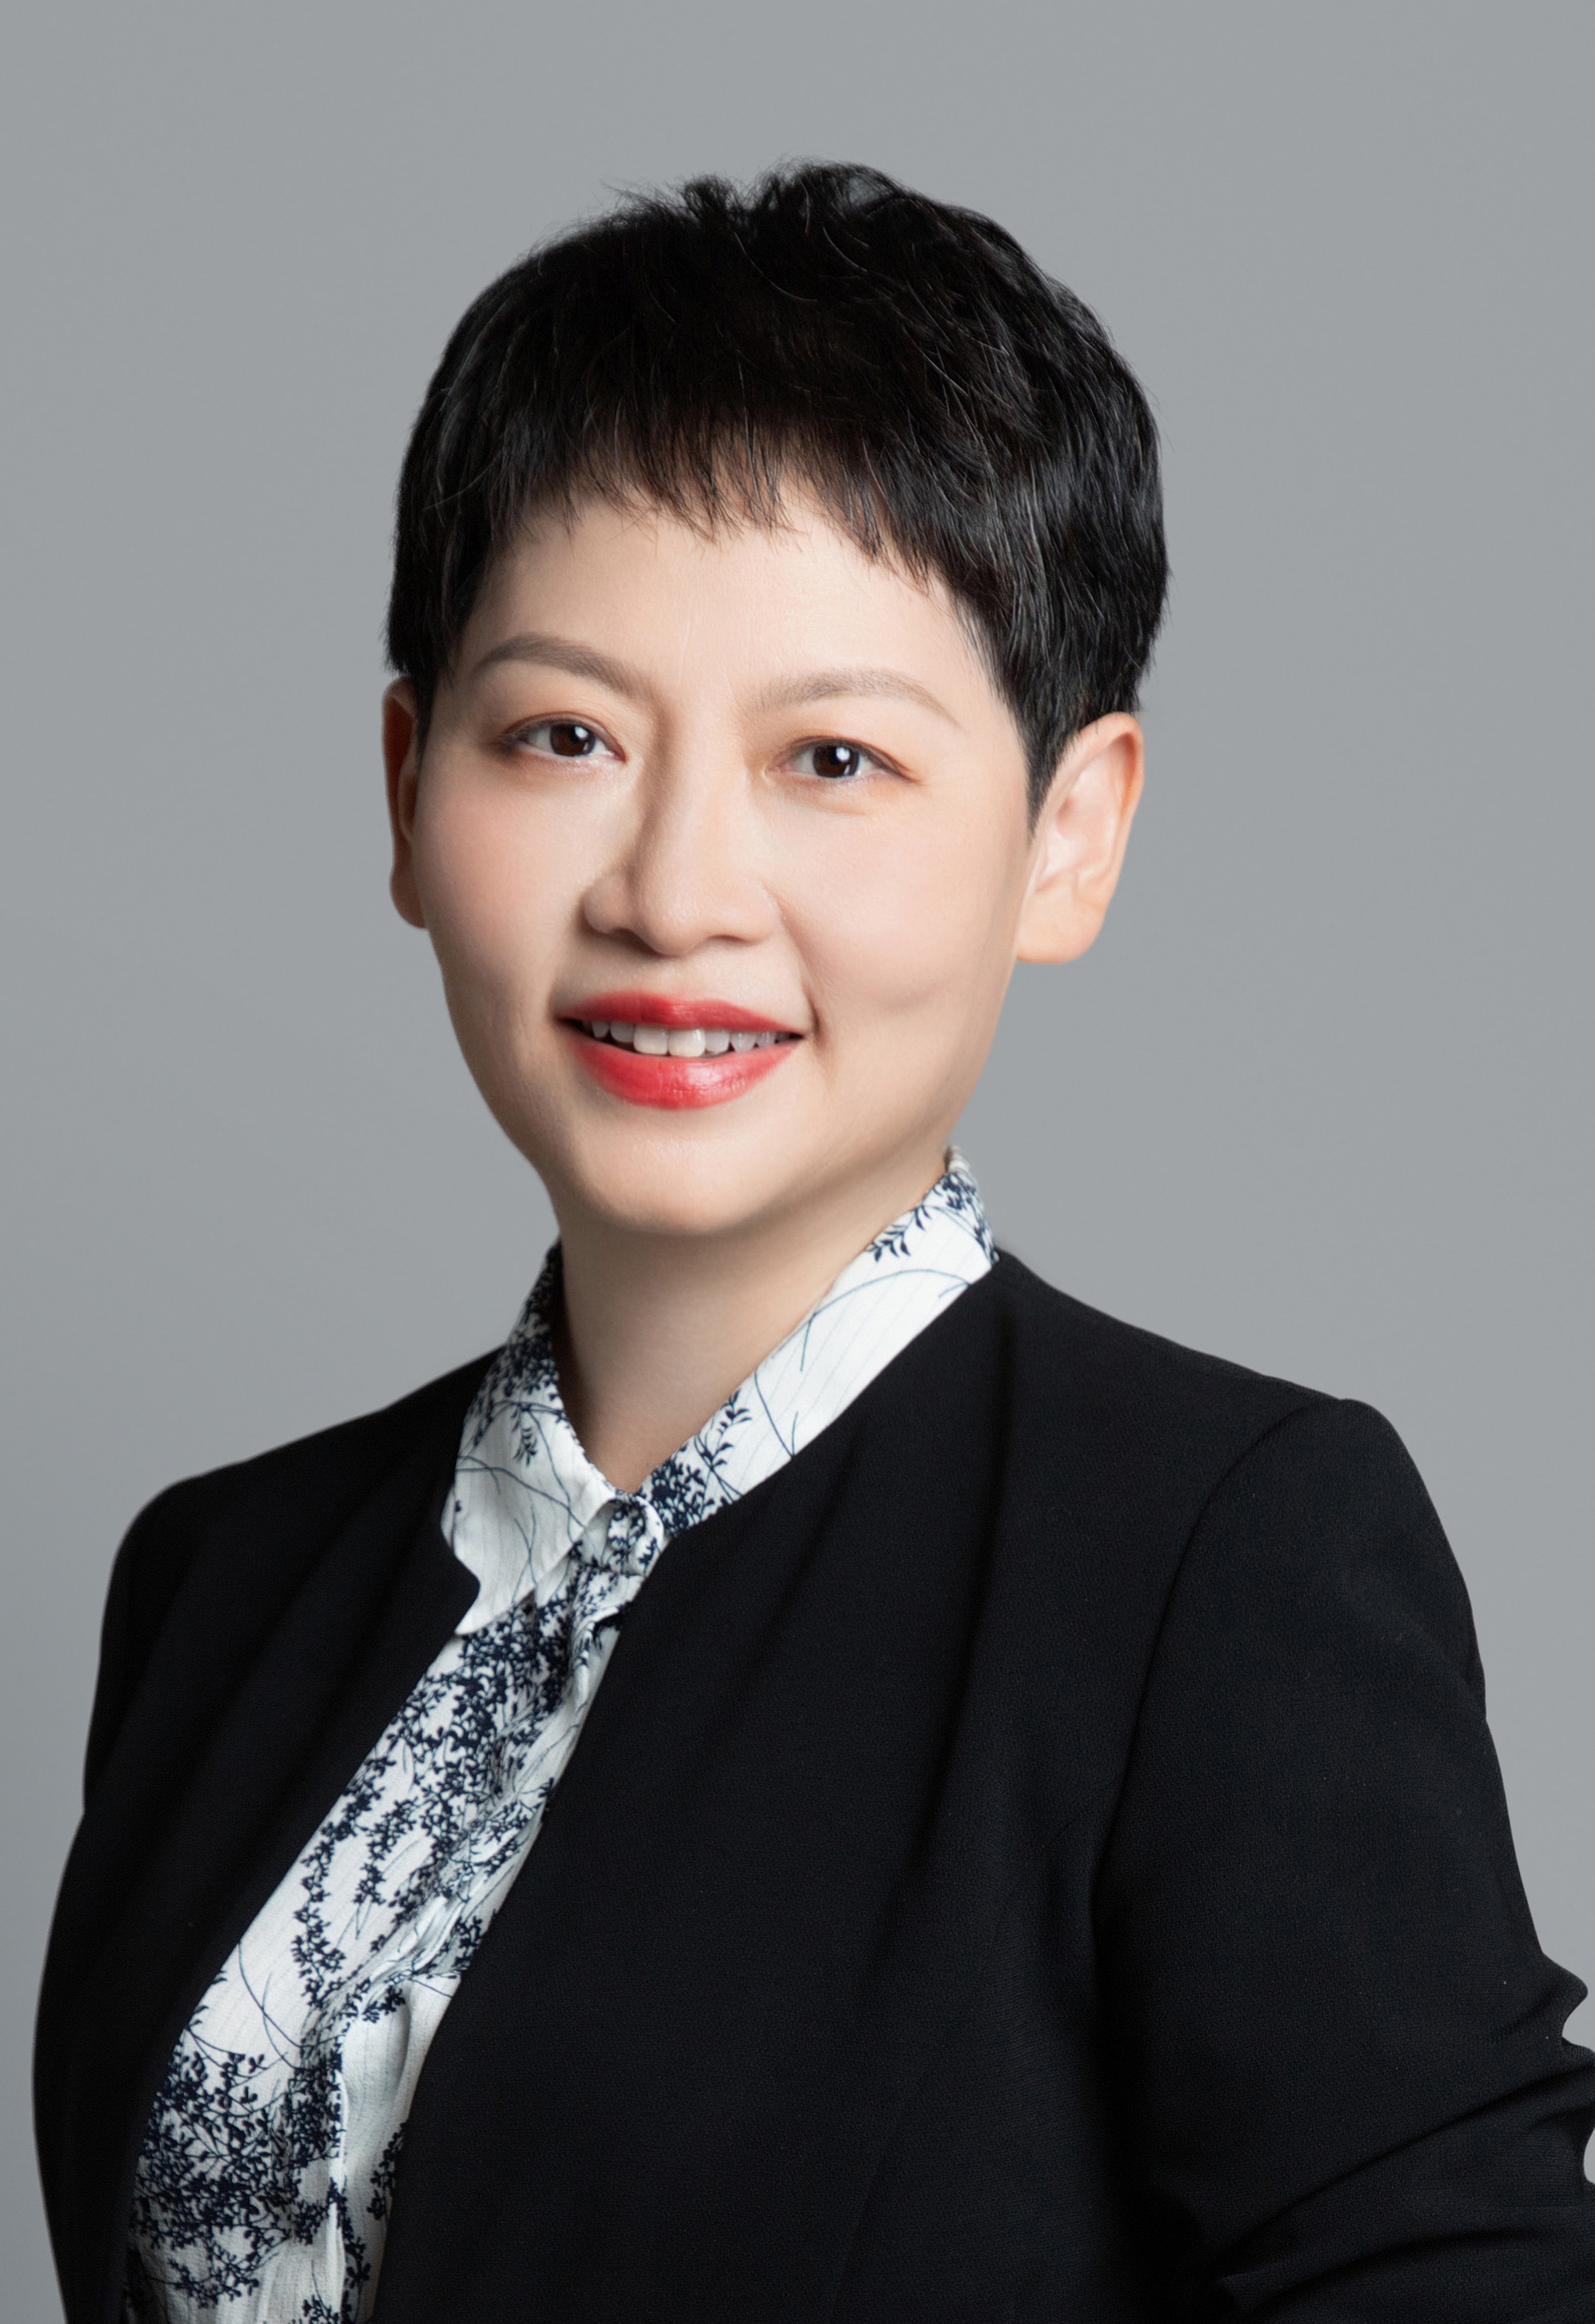 Head of Finance: Li Chunling